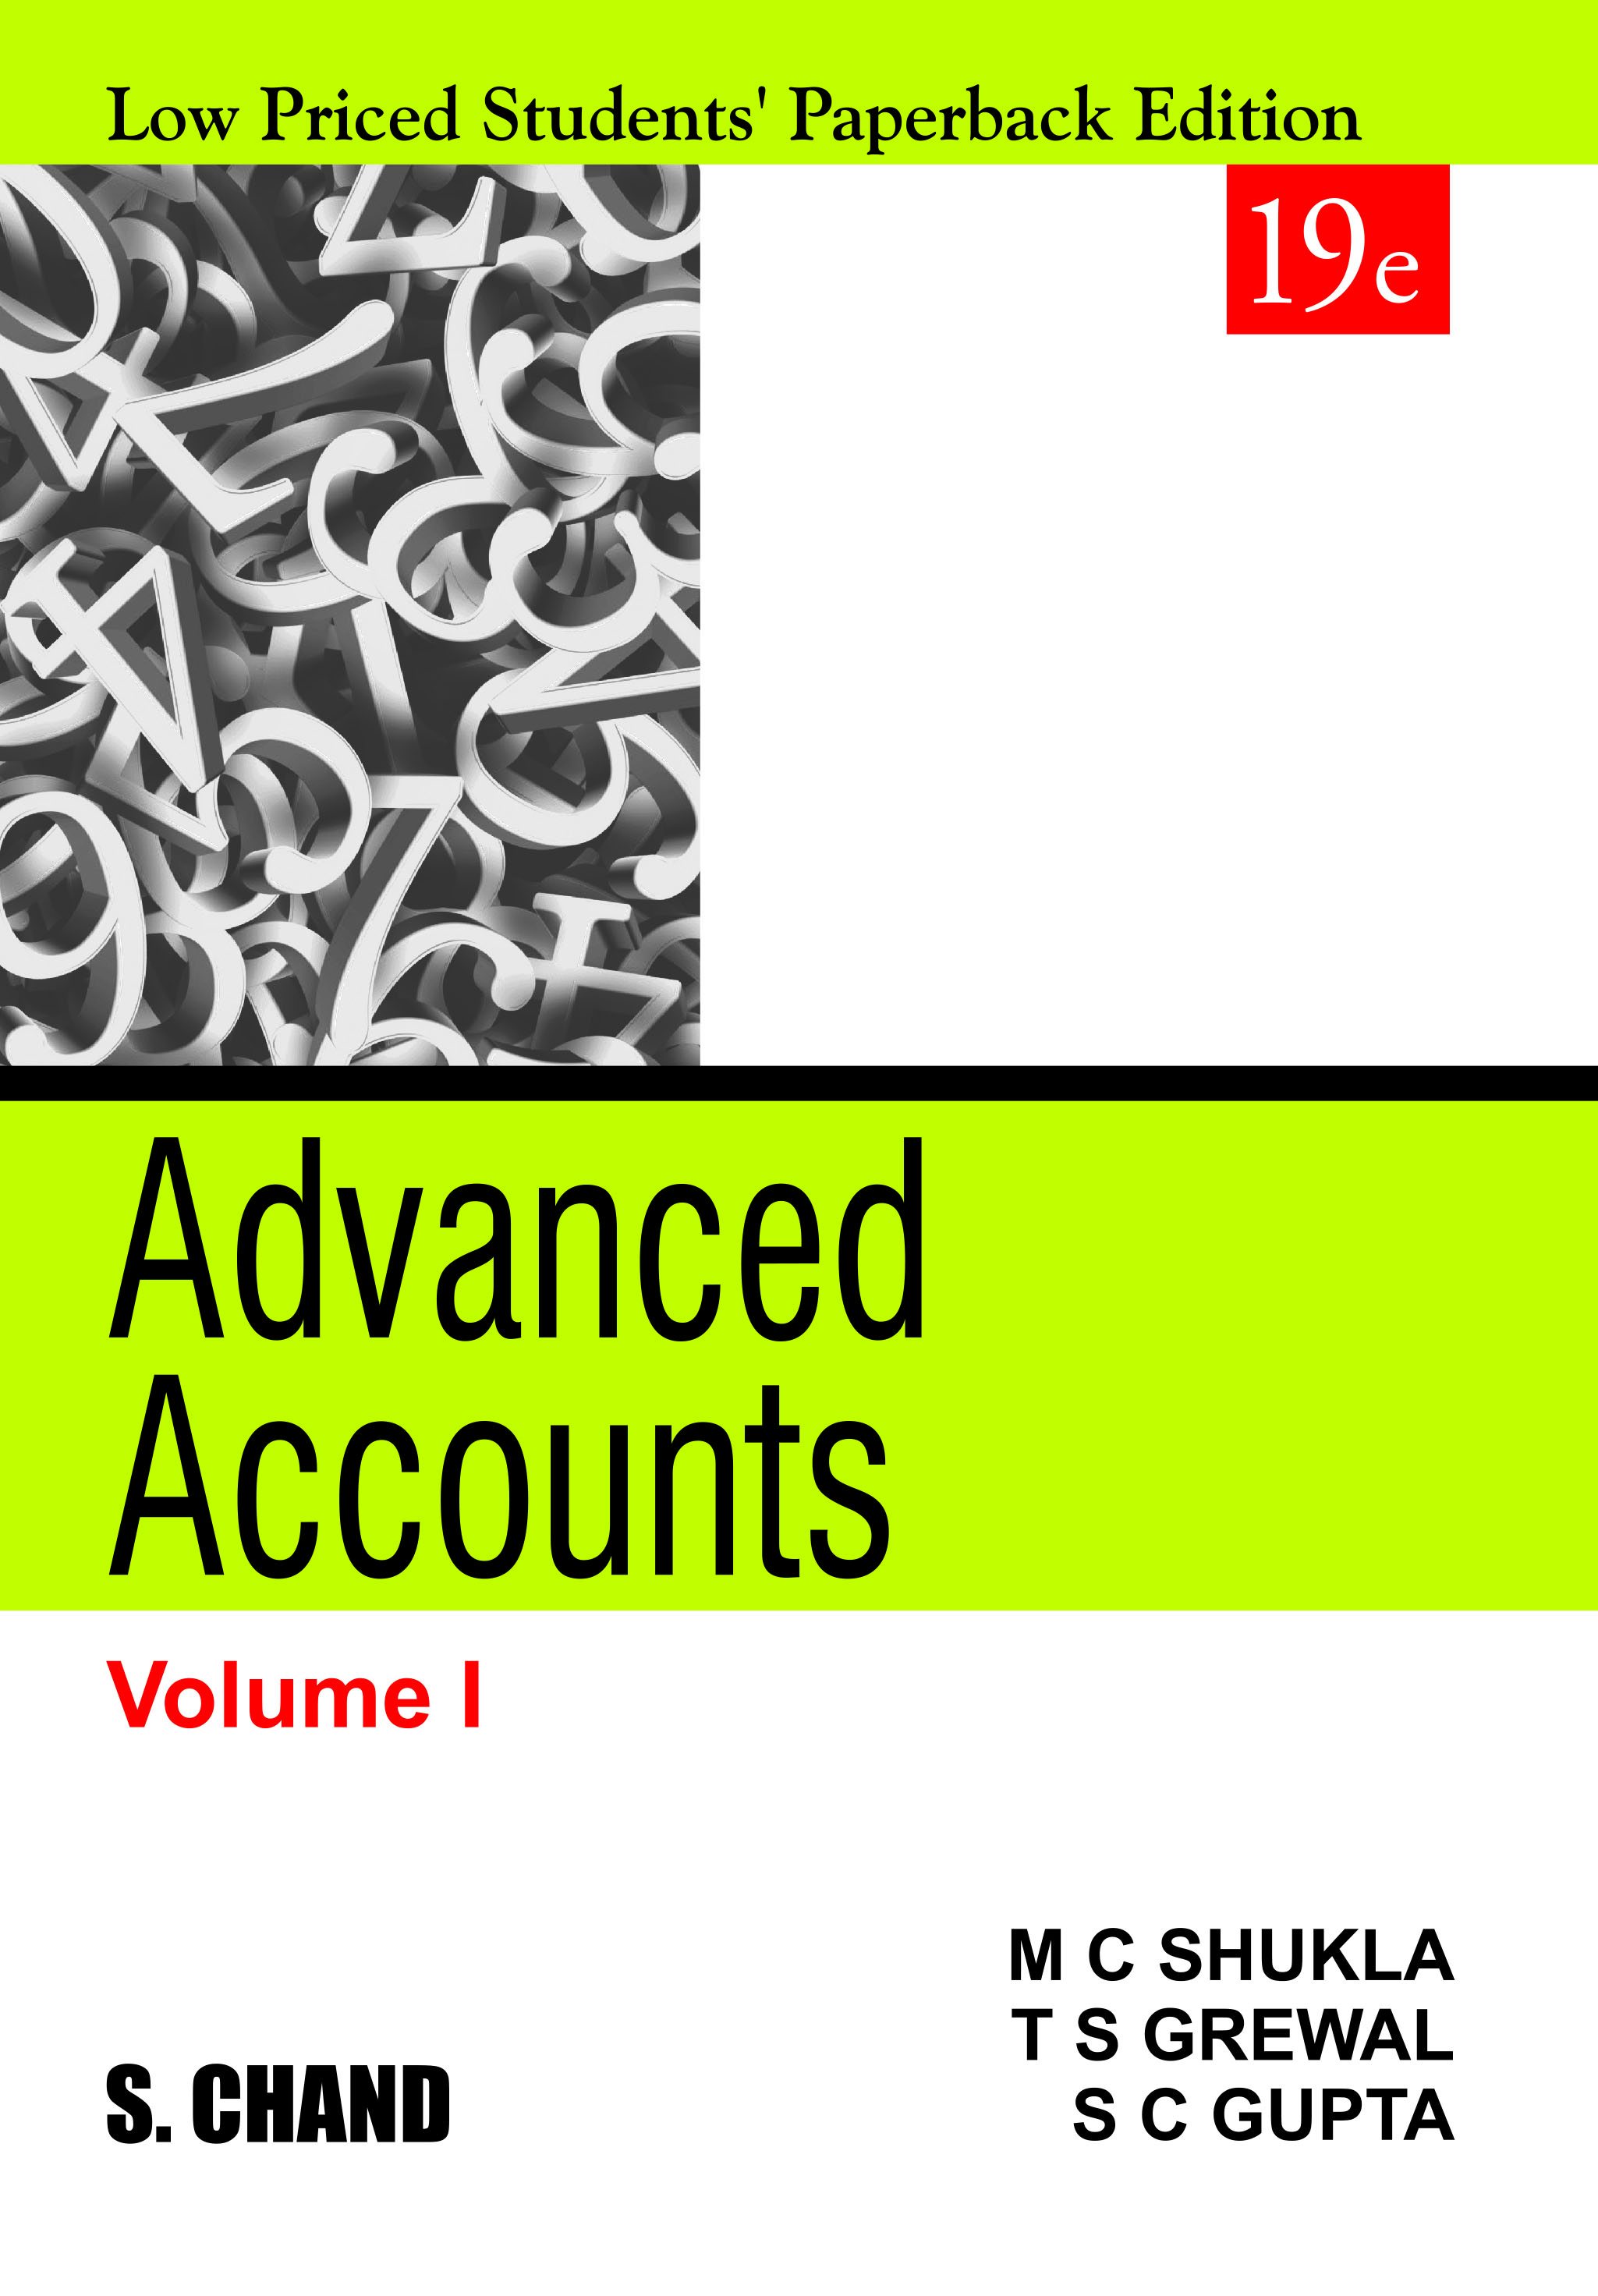 ADVANCED ACCOUNTS VOLUME I, 19/e (LPSPE)